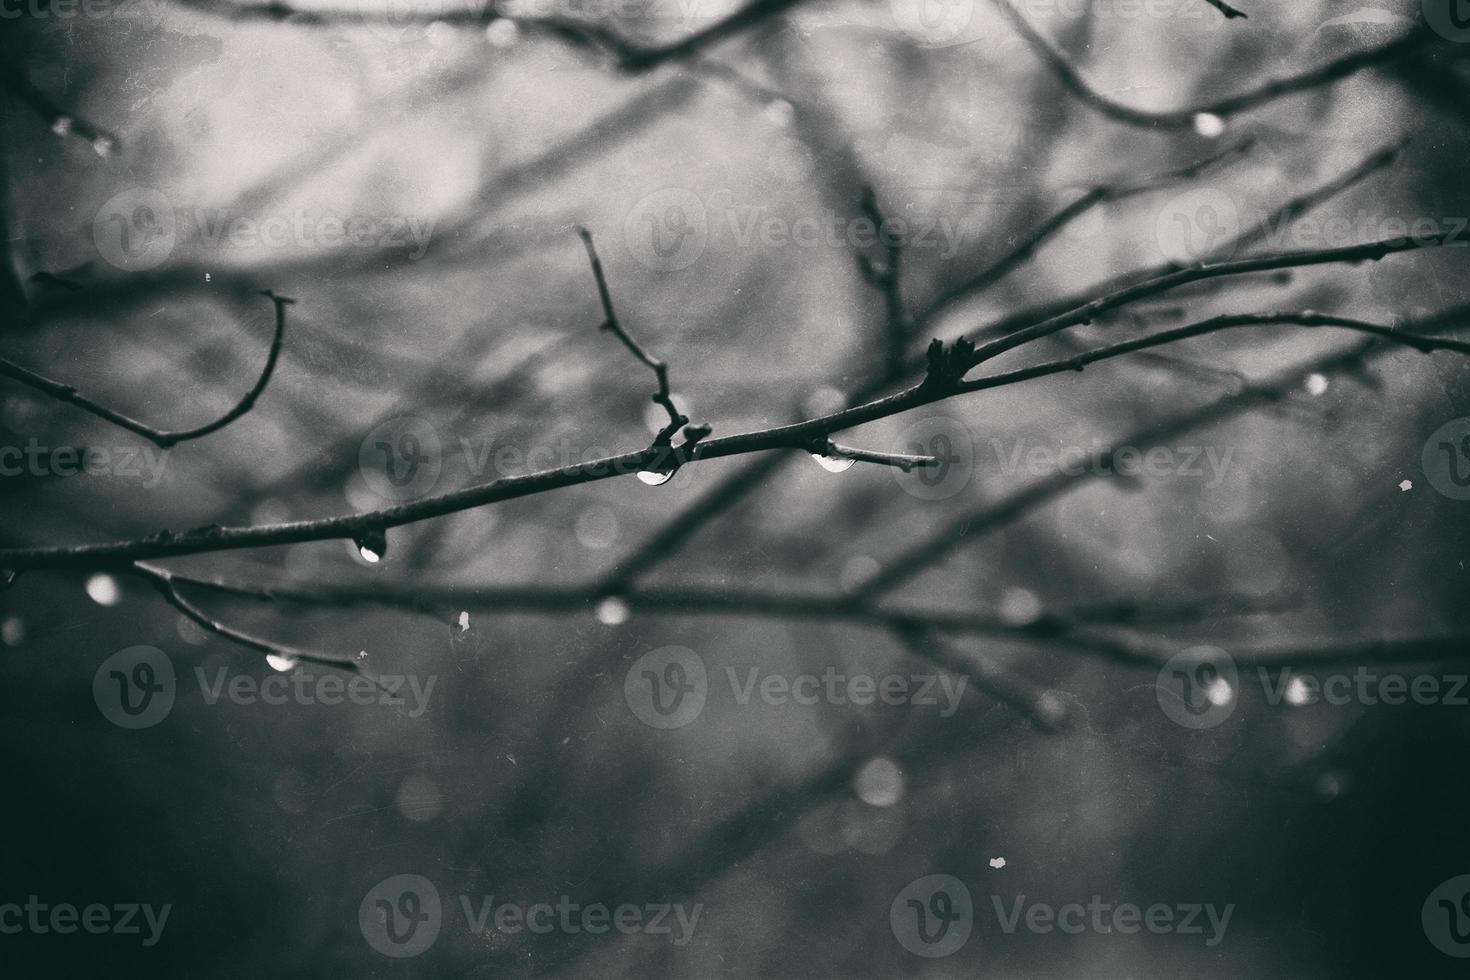 ensam bladlösa träd grenar med droppar av vatten efter en november kall regn foto